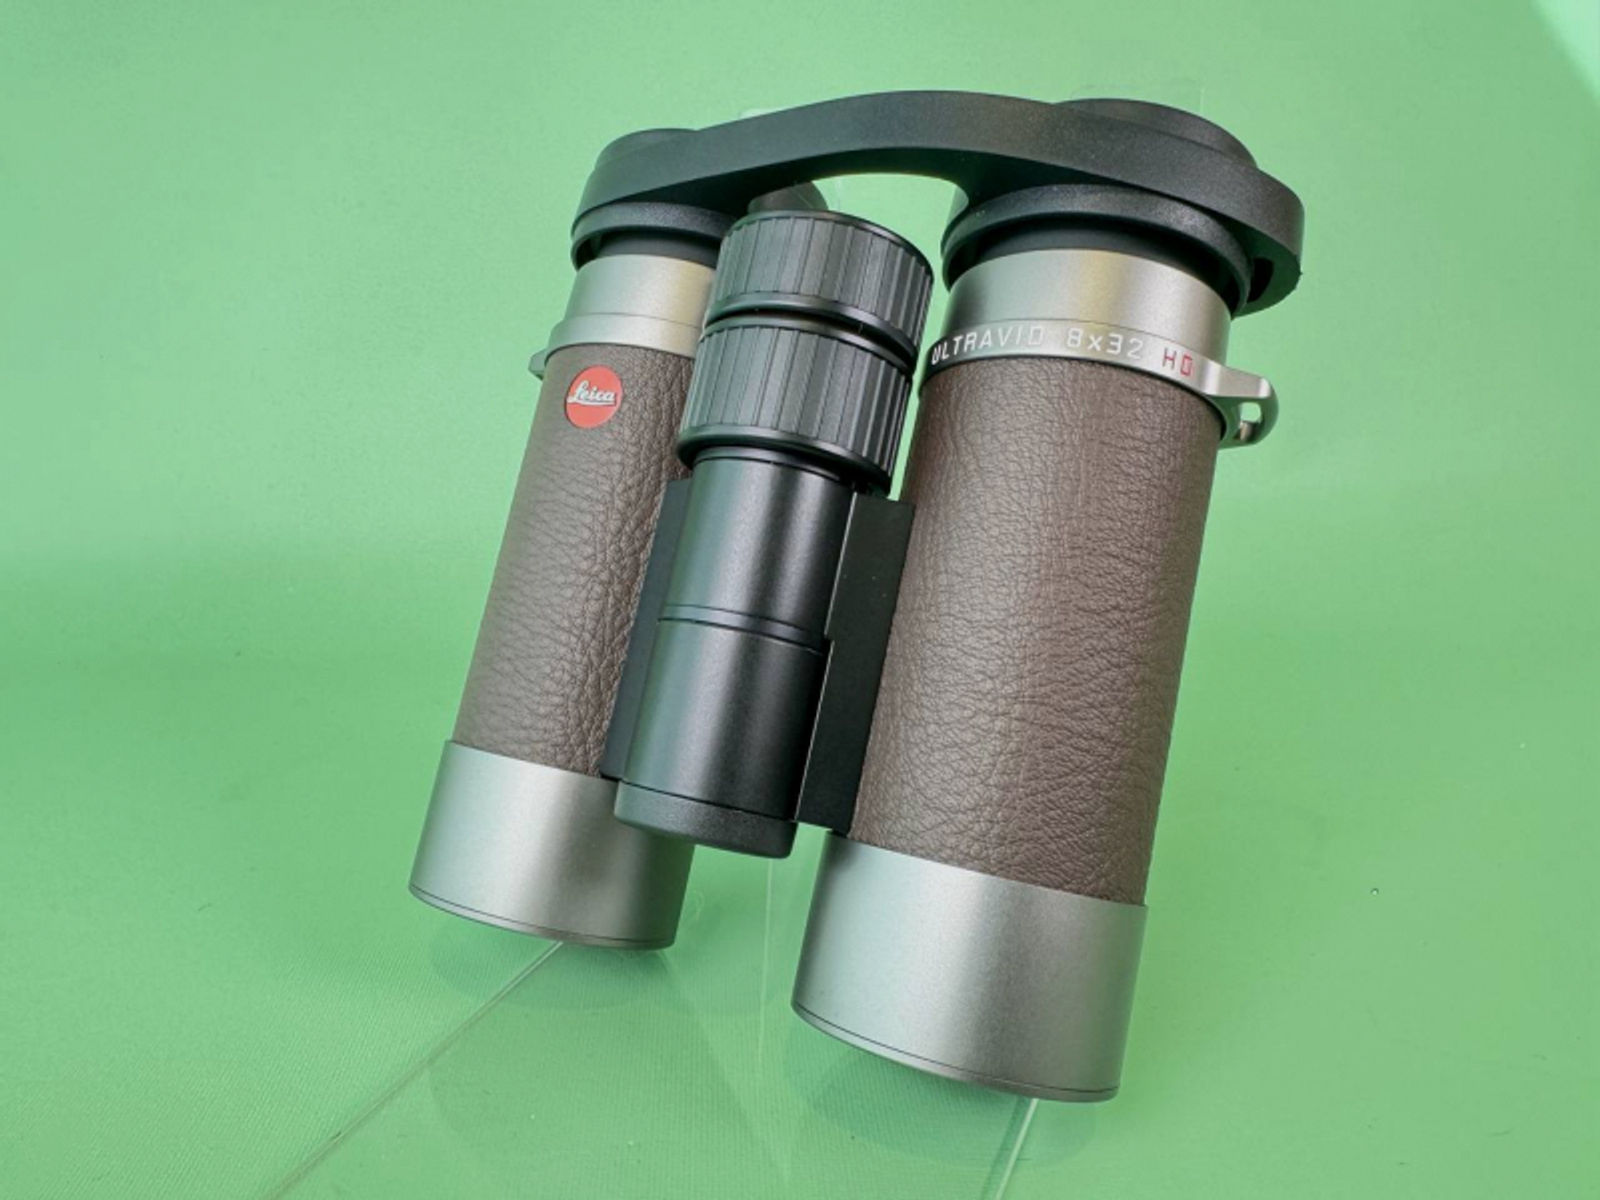 Leica Ultravid 8x32 HD-Plus Custom Fernglas *Waffenhandel Ahnert* *Neu* *leicht*